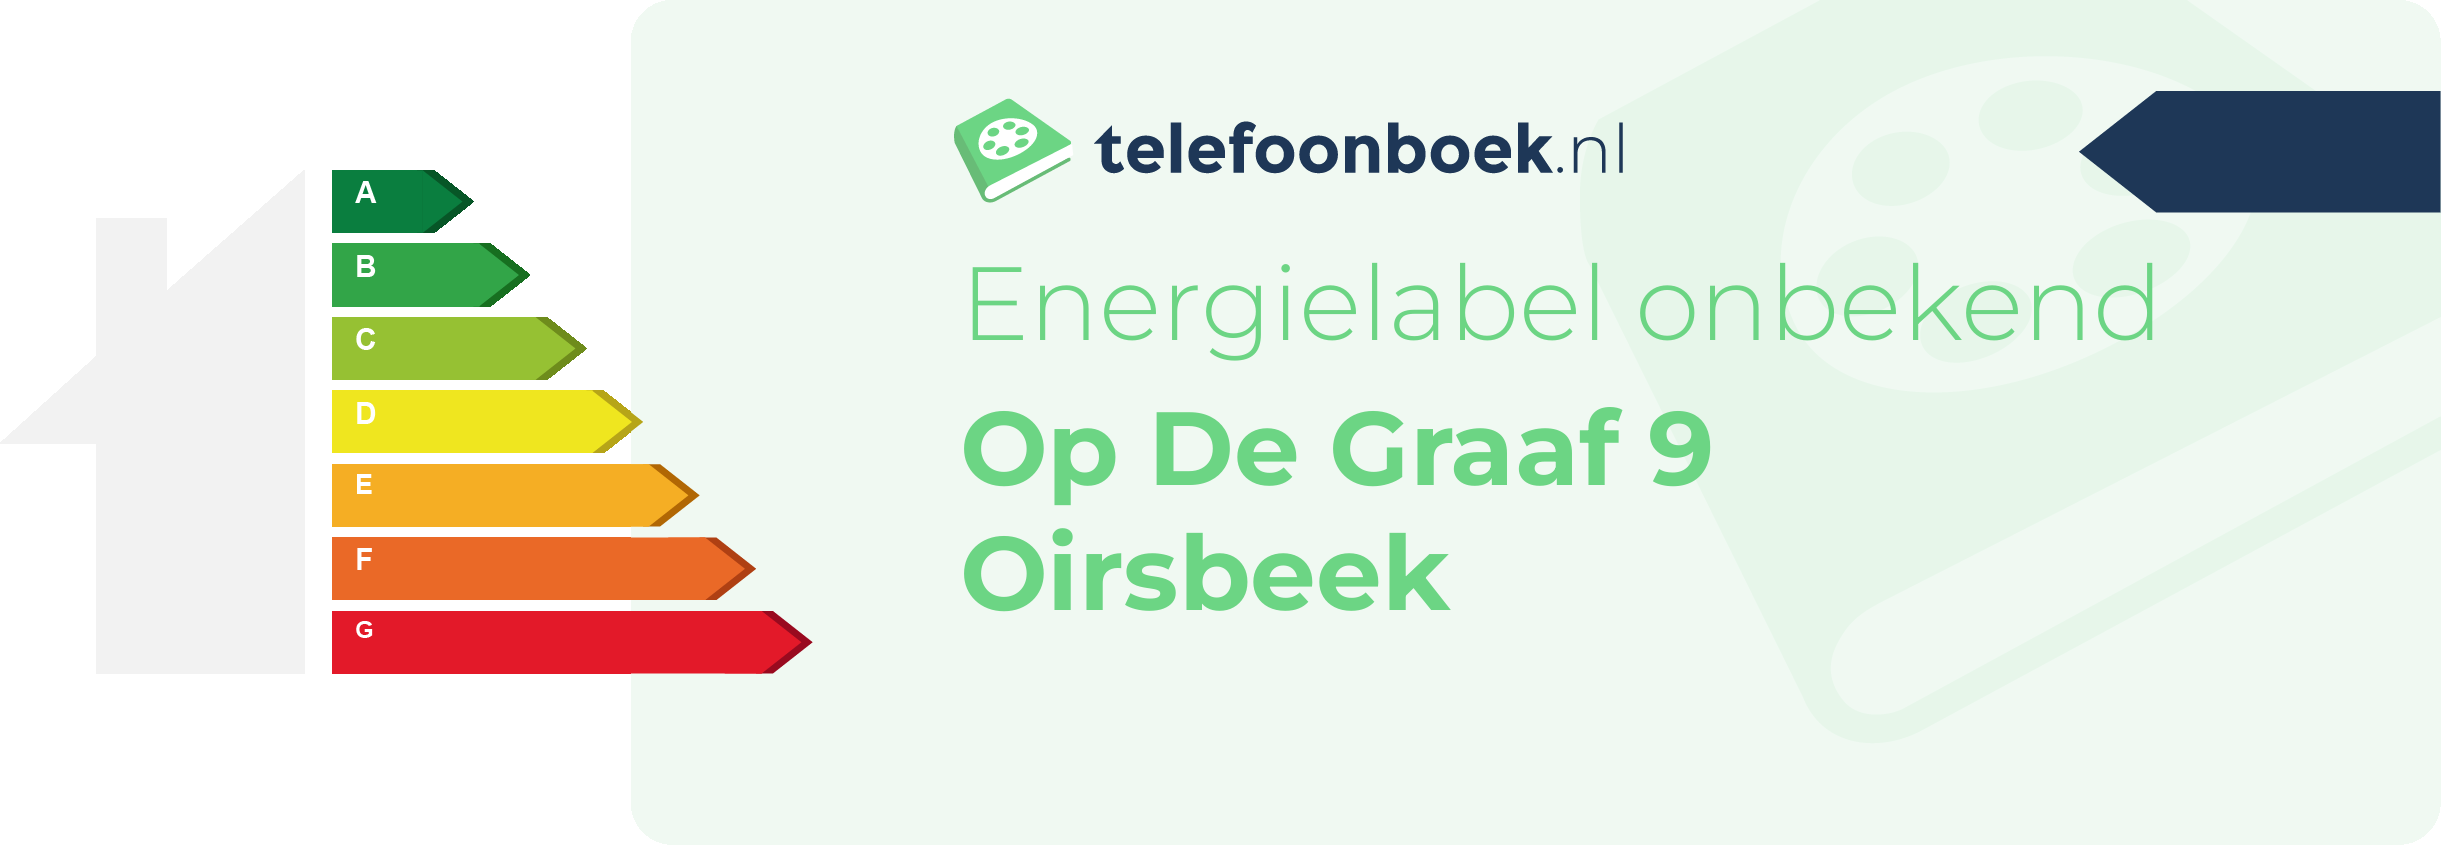 Energielabel Op De Graaf 9 Oirsbeek